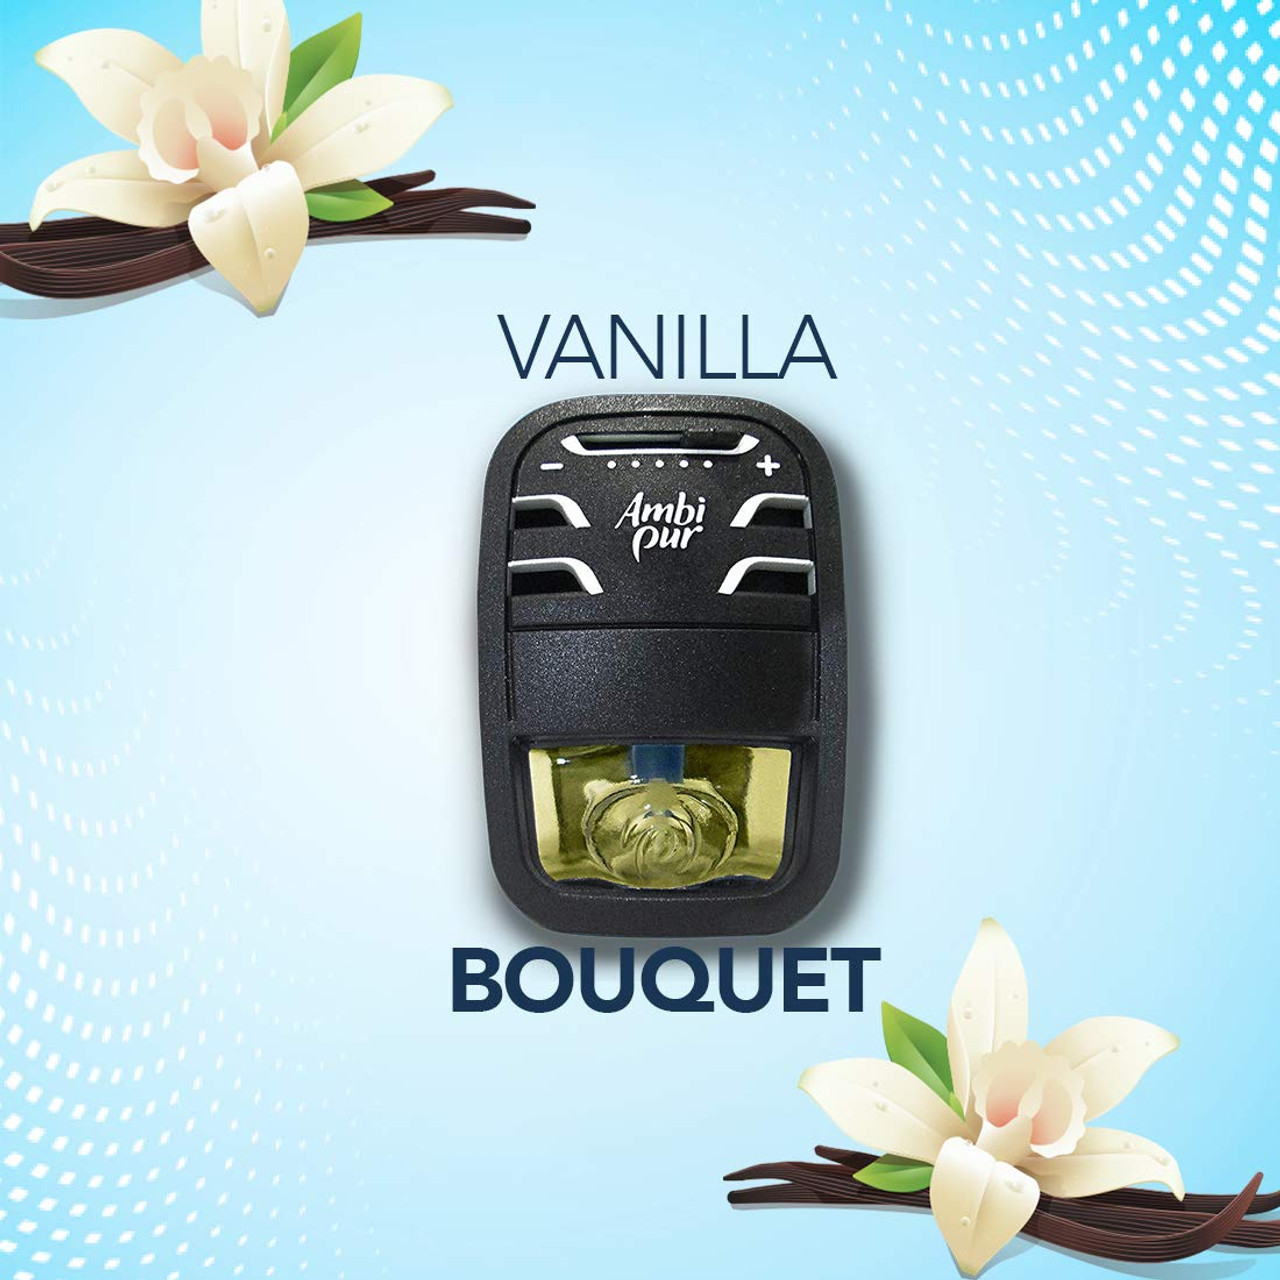 Ambi Pur Vanilla Bouquet Car Air Freshener Refill (7.5 ml) - Ambi pur